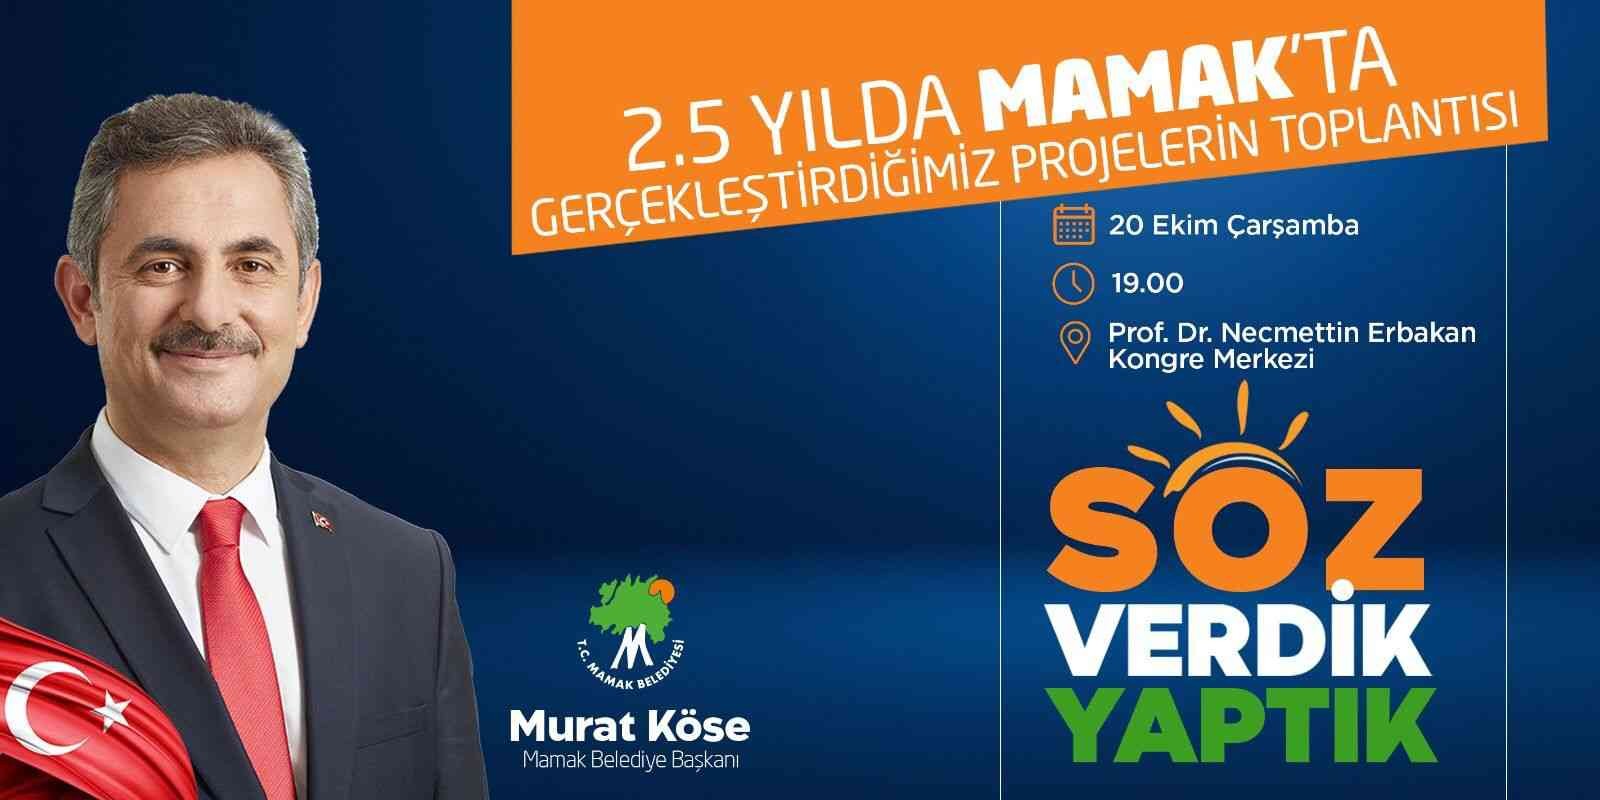 Mamak Belediye Başkanı Köse: “Söz verdik, yaptık” #ankara